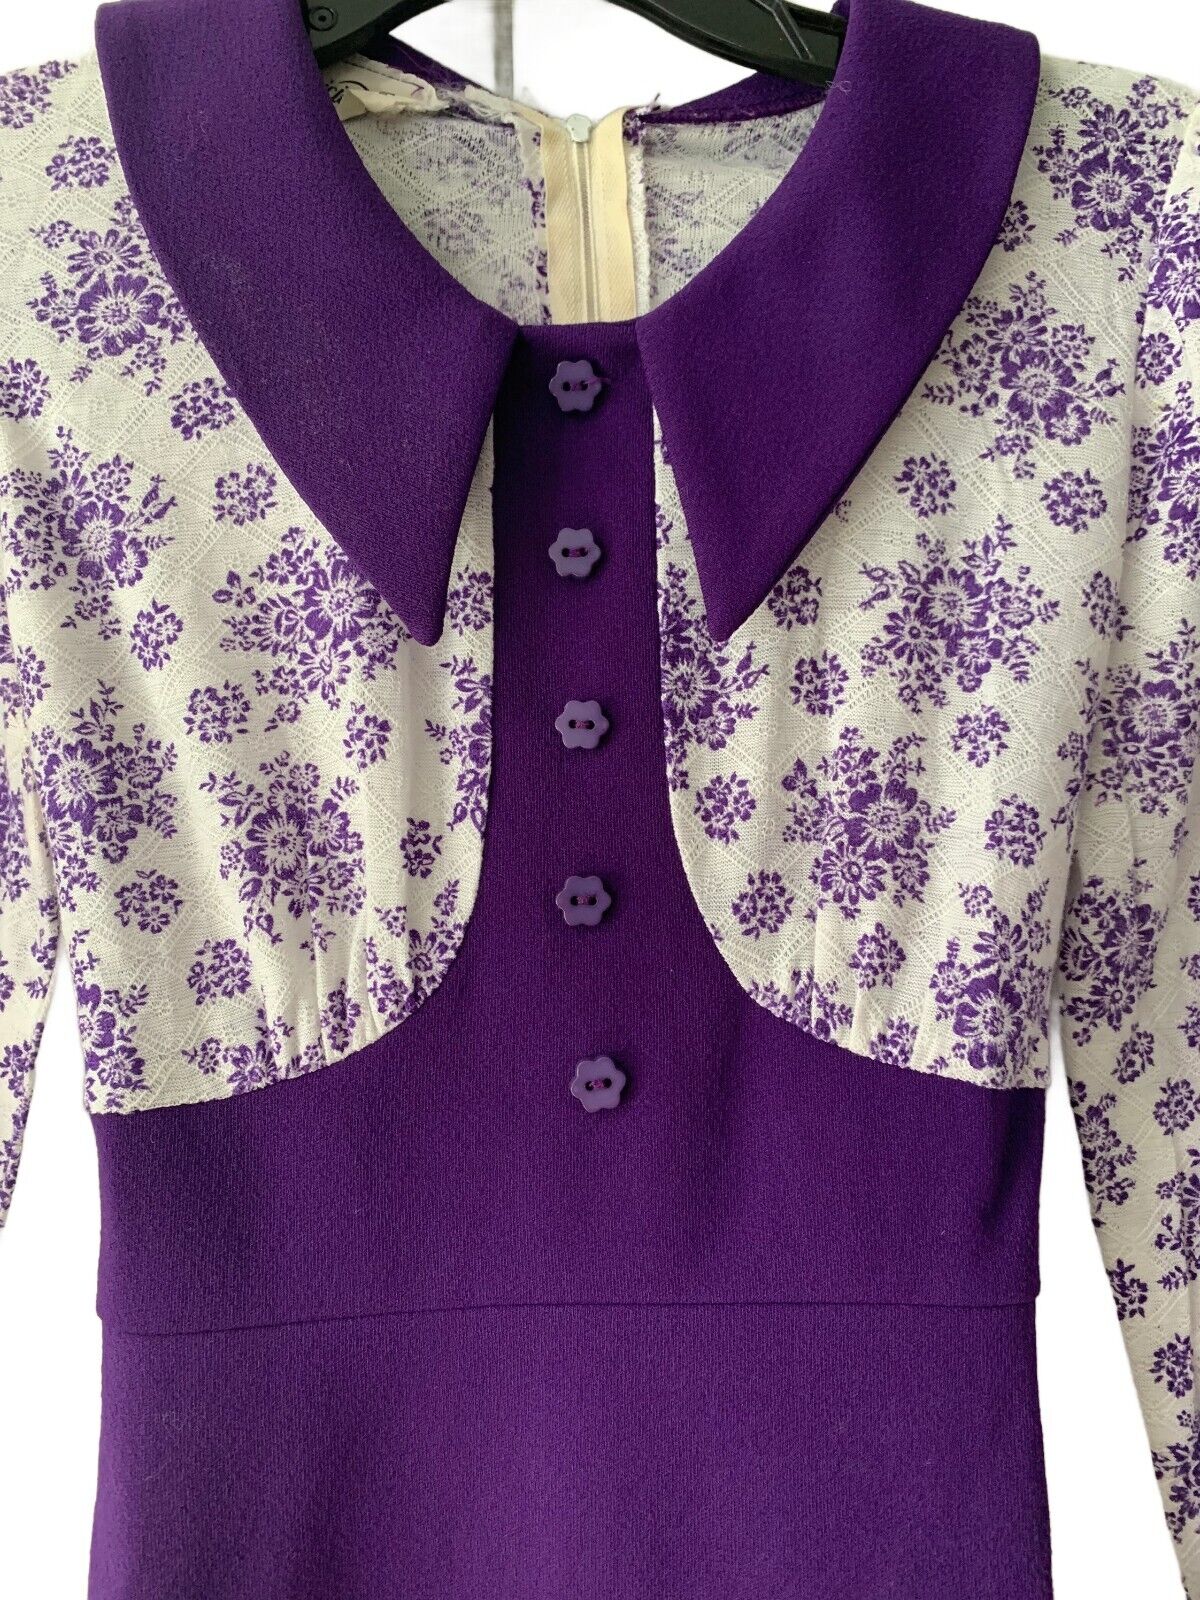 S Vtg 70s MOD Purple Long Sleeve Floral Colorbloc… - image 12